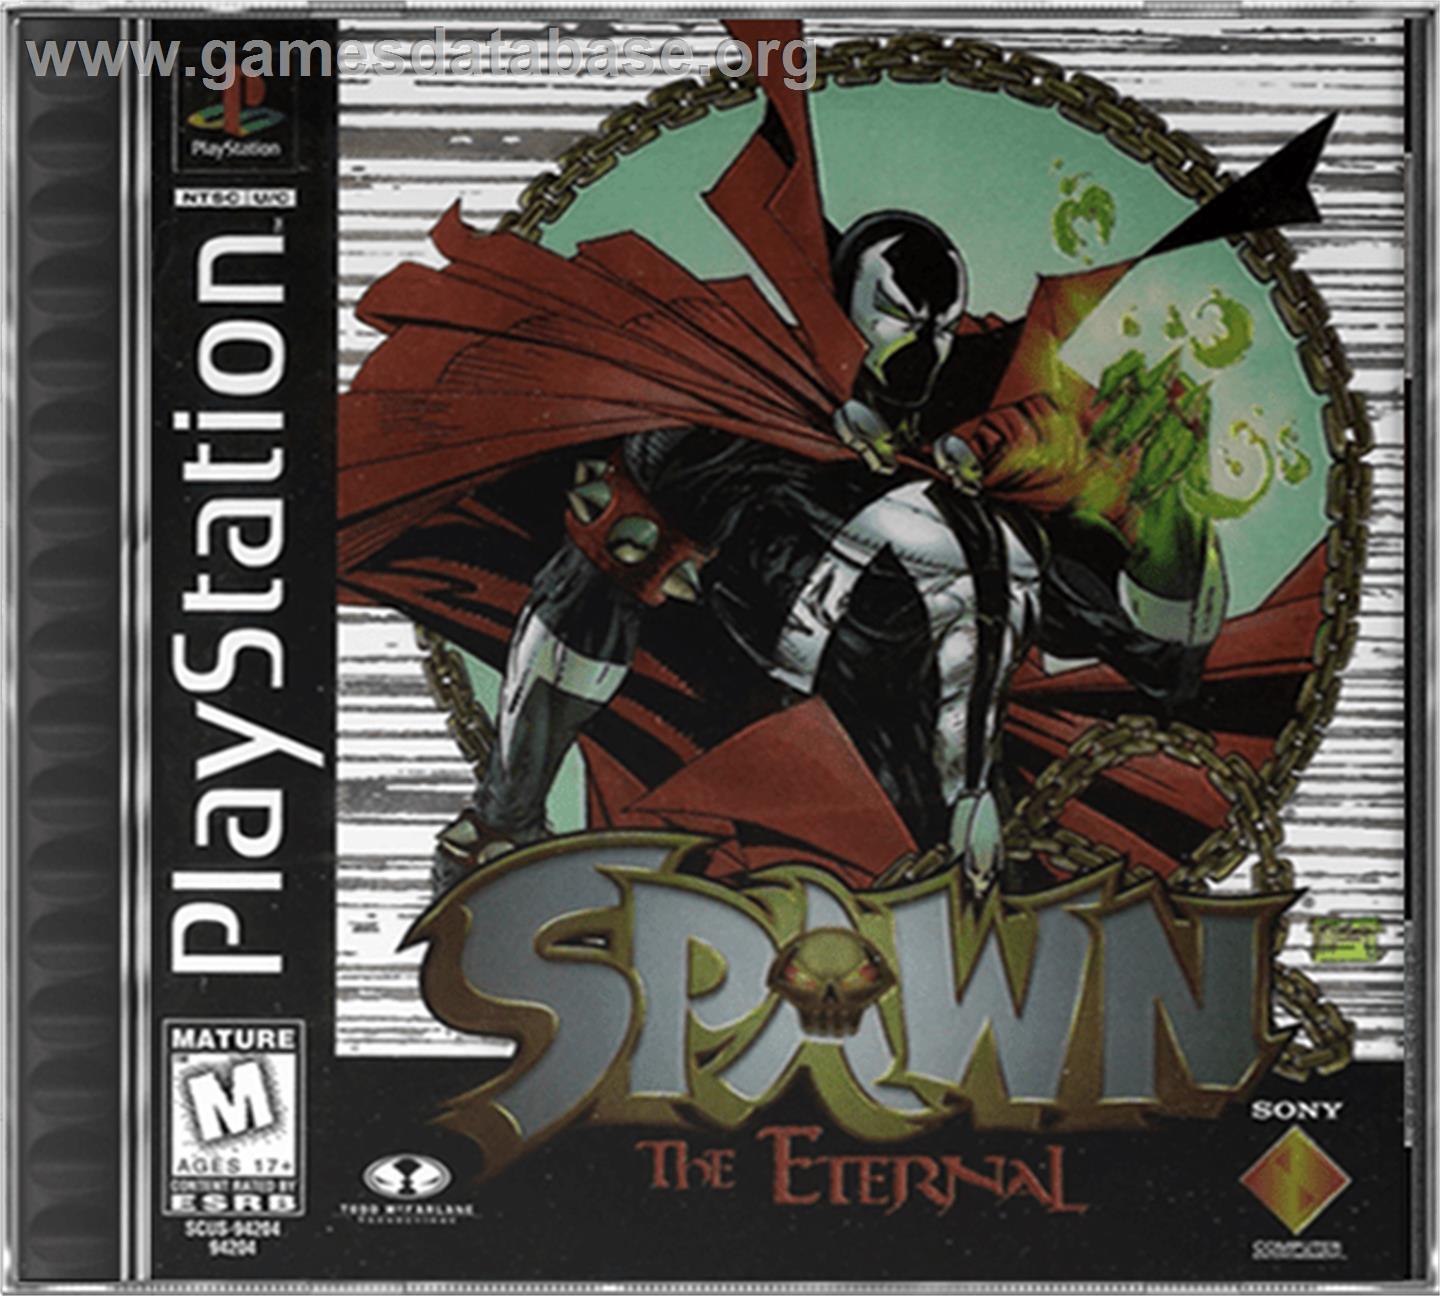 Spawn: The Eternal - Sony Playstation - Artwork - Box